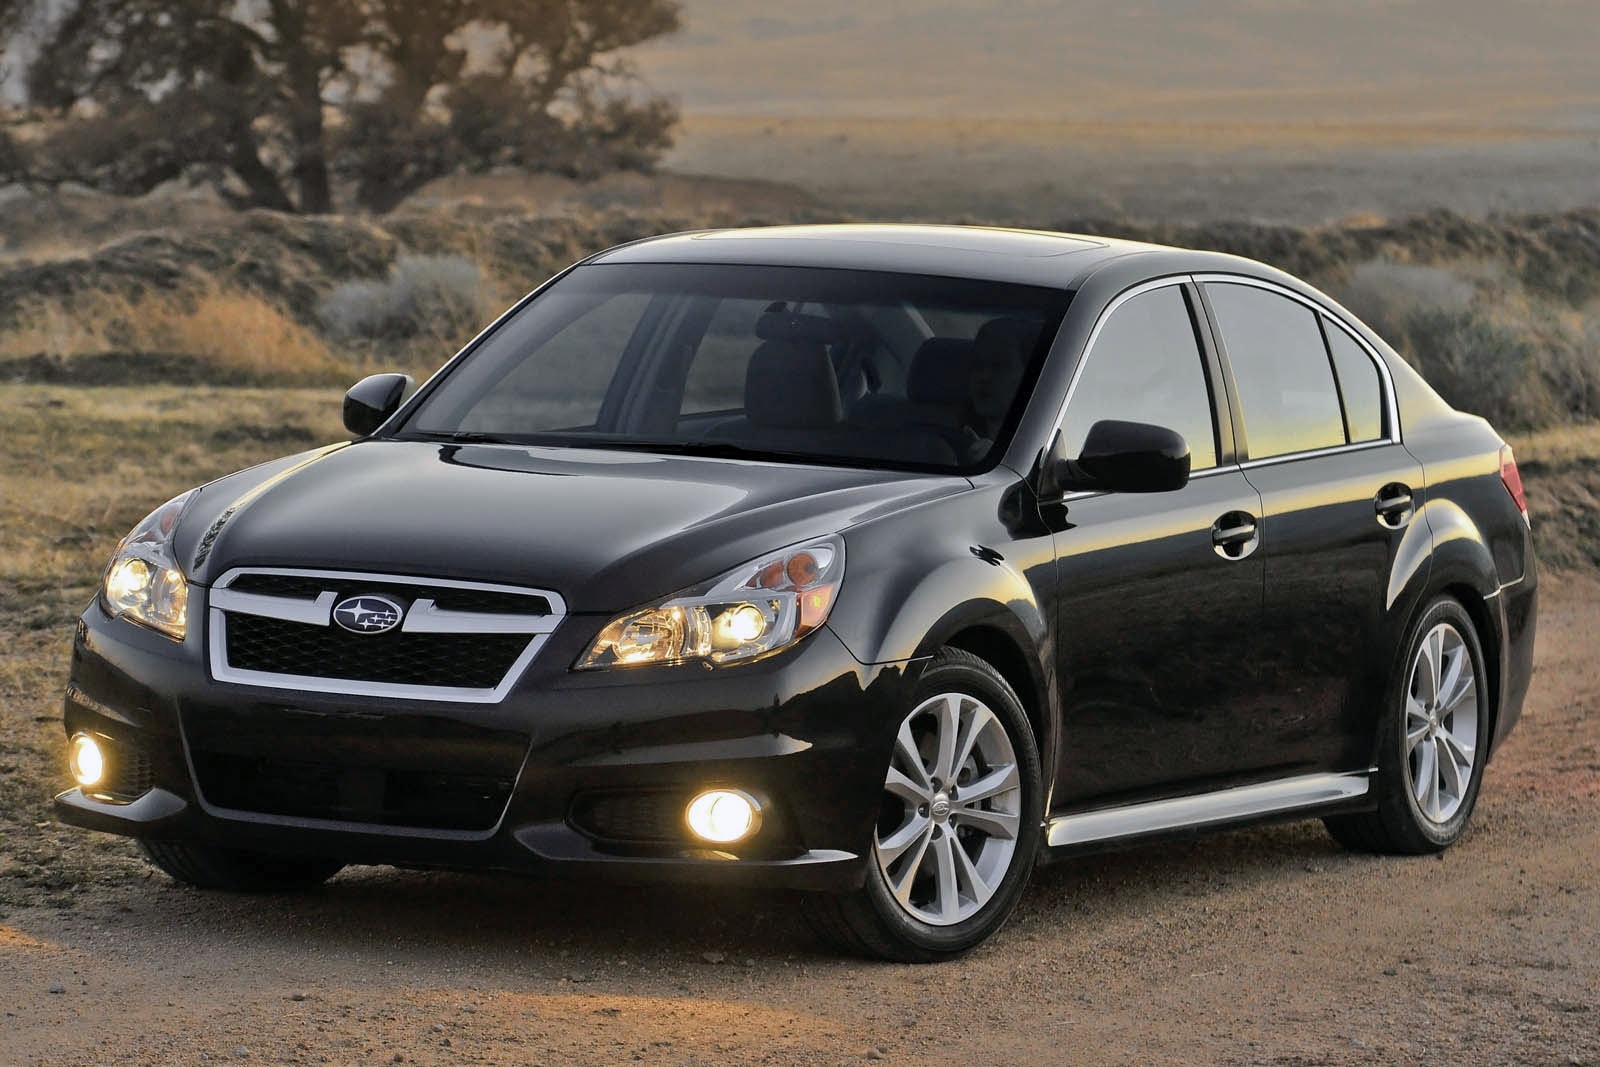 2014 Subaru Legacy Review & Ratings | Edmunds